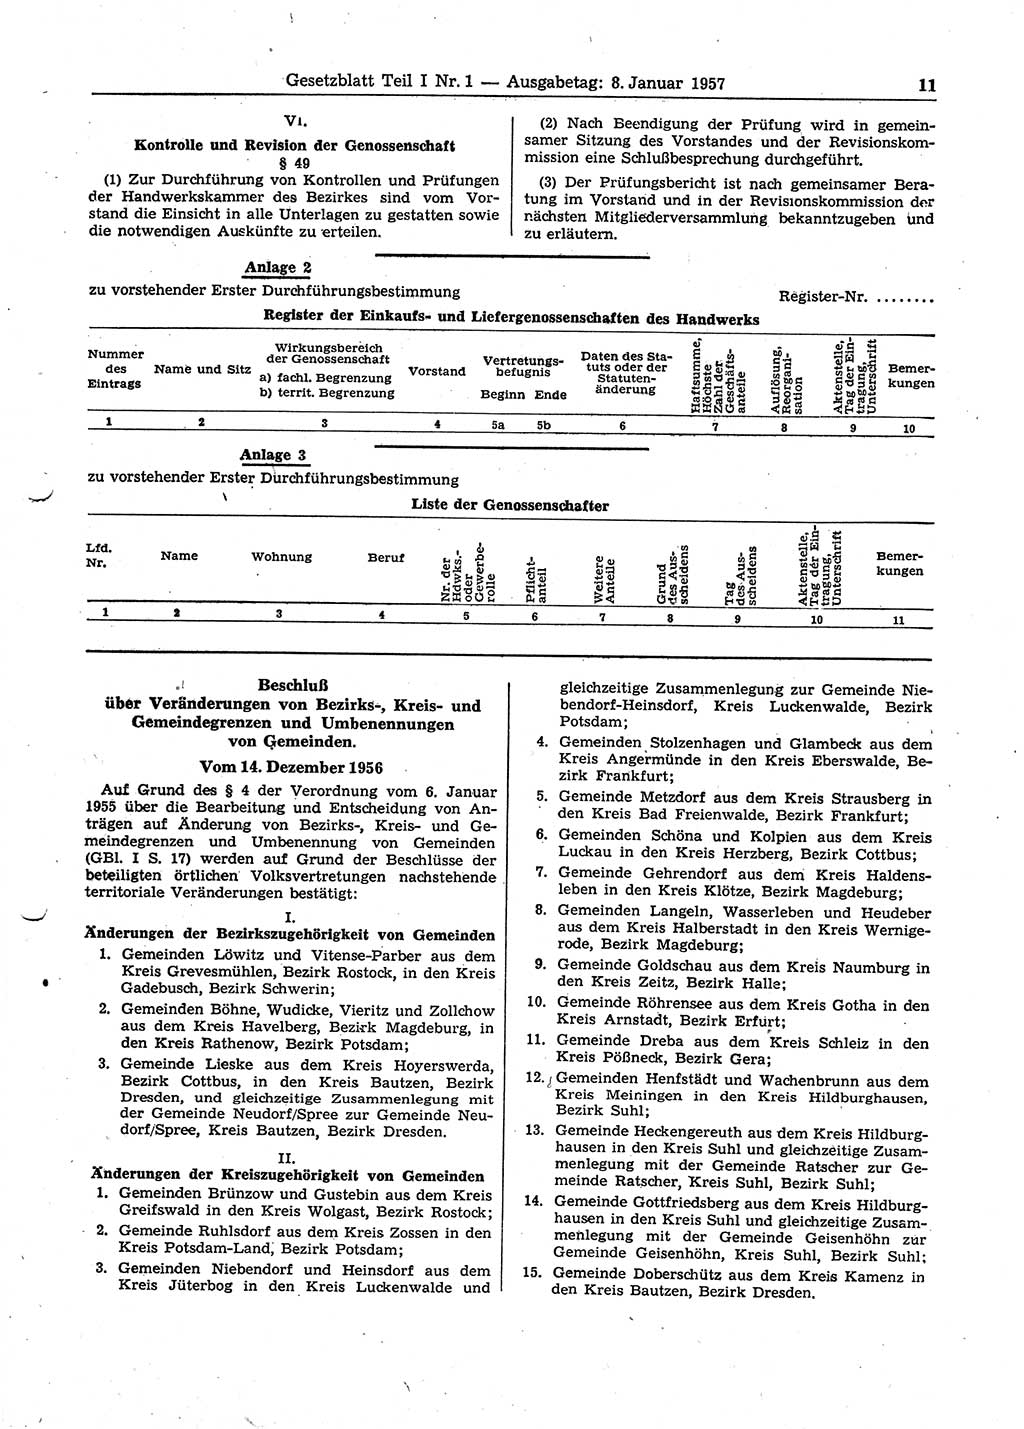 Gesetzblatt (GBl.) der Deutschen Demokratischen Republik (DDR) Teil Ⅰ 1957, Seite 11 (GBl. DDR Ⅰ 1957, S. 11)